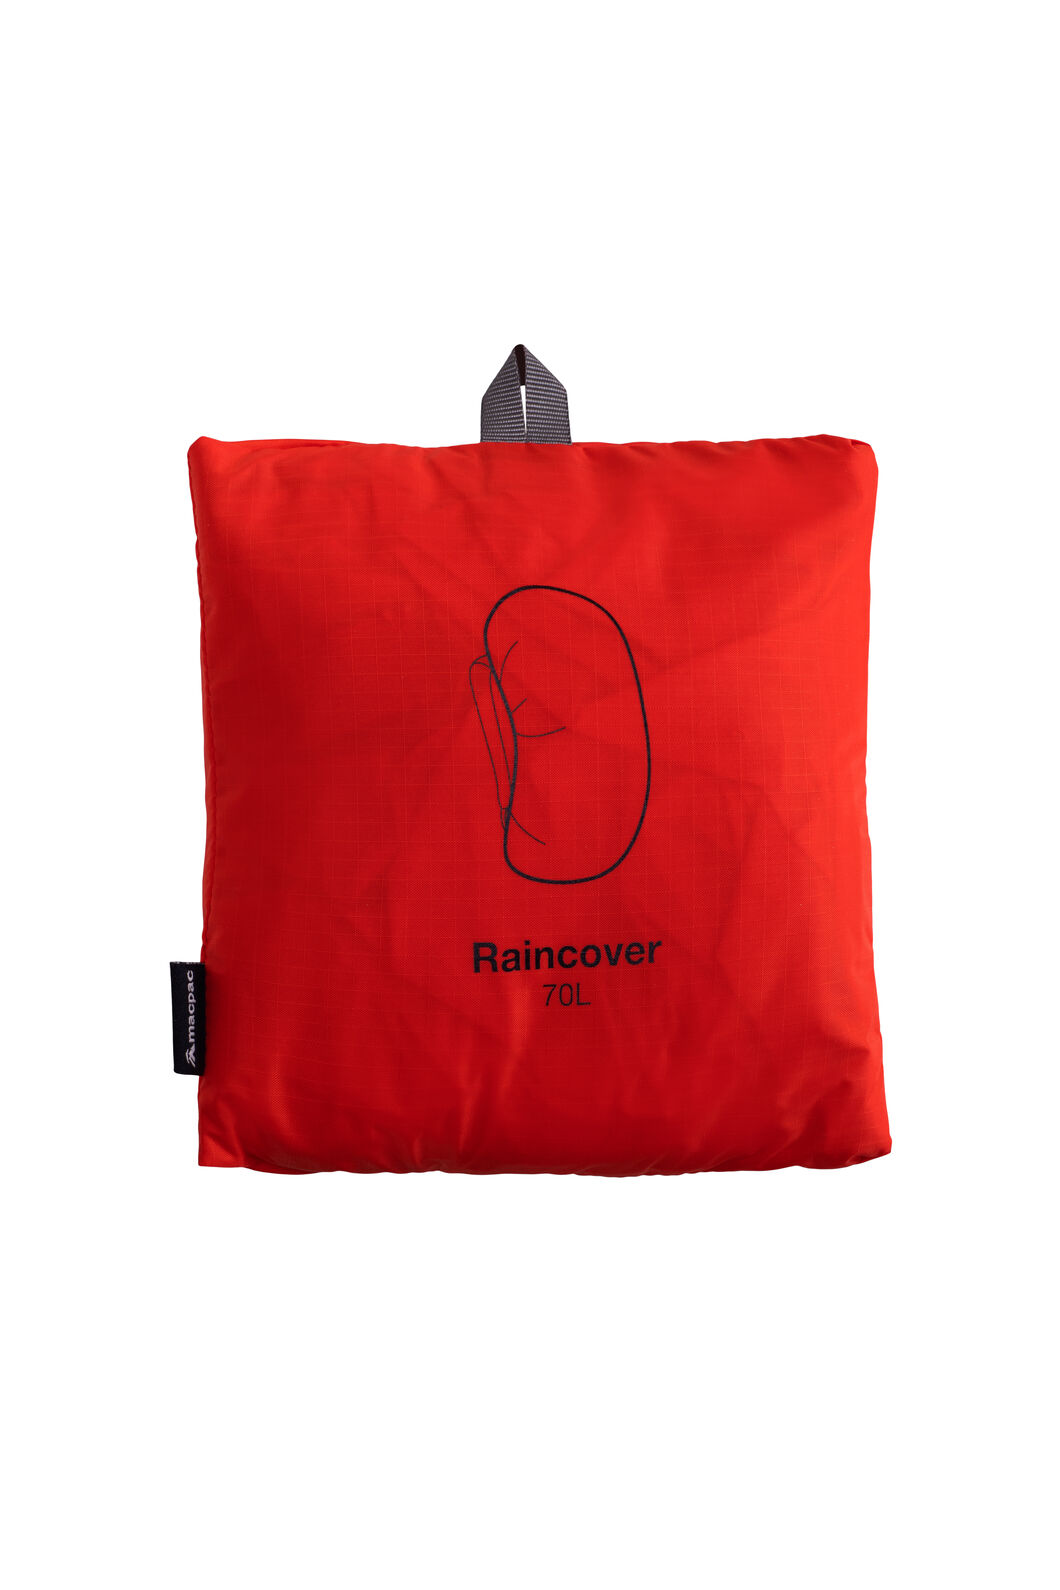 Macpac Pack Raincover — 70L, Indicator, hi-res